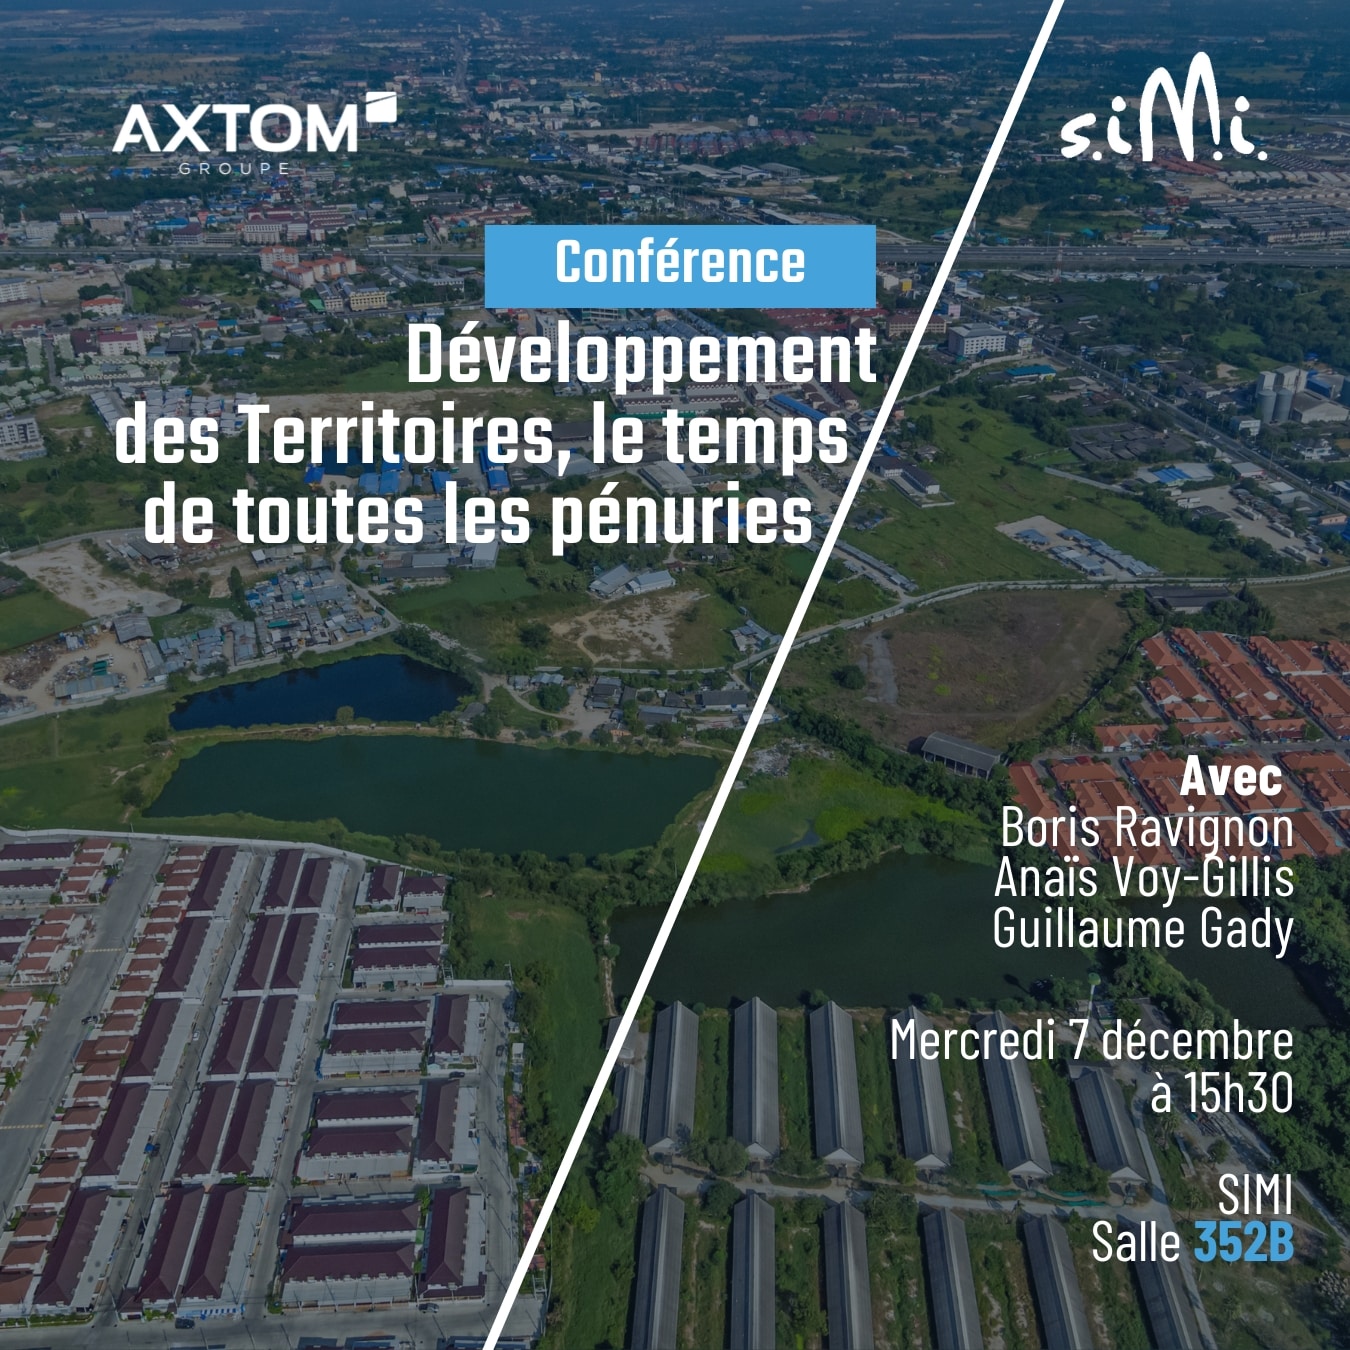 Axtom conférence développement des territoires SIMI